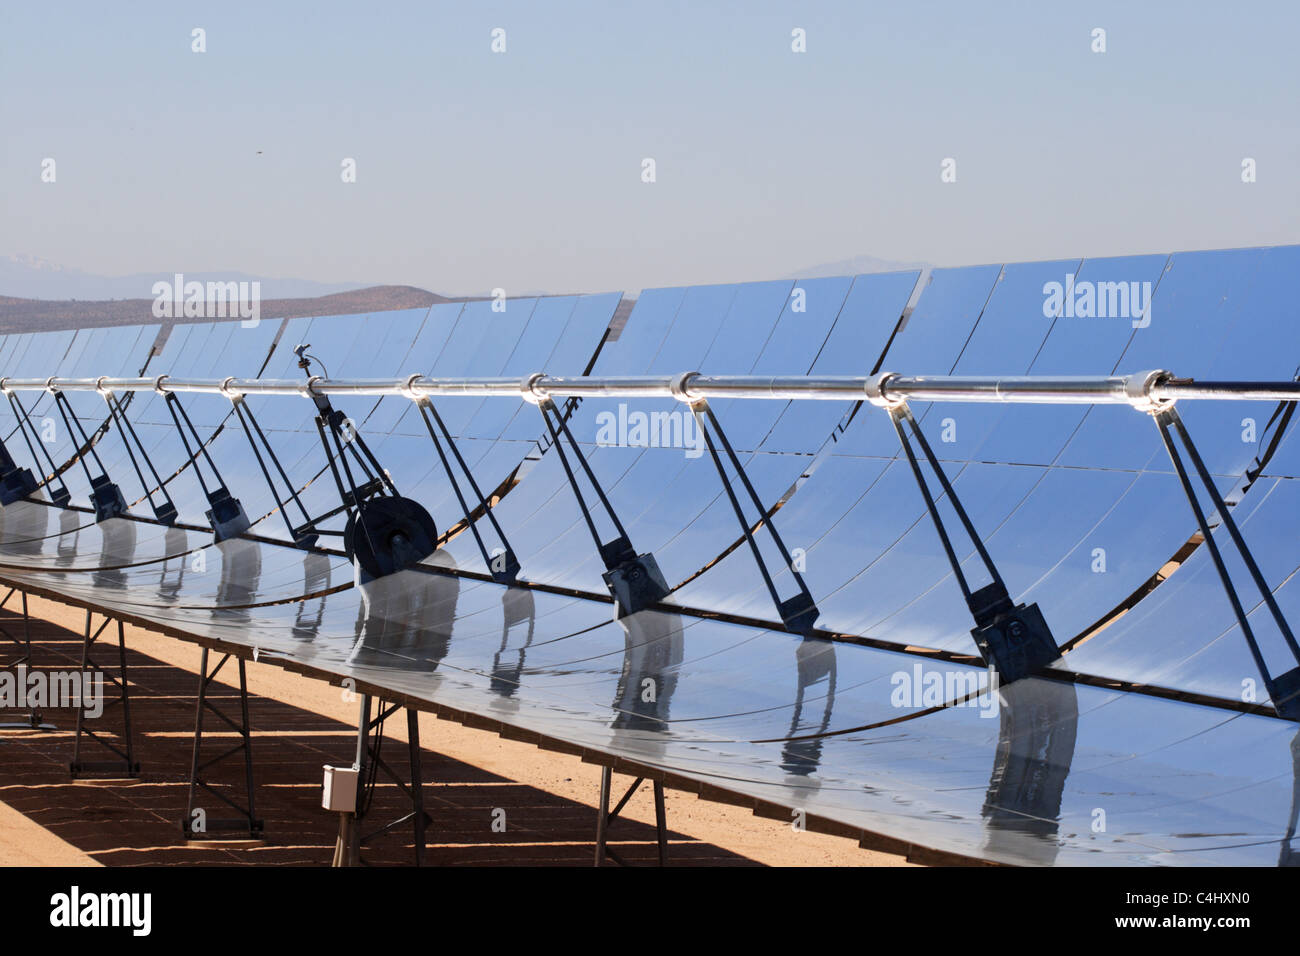 SEGS energia termica solare energia elettrica impianto con specchi parabolici di concentrare la luce del sole Foto Stock